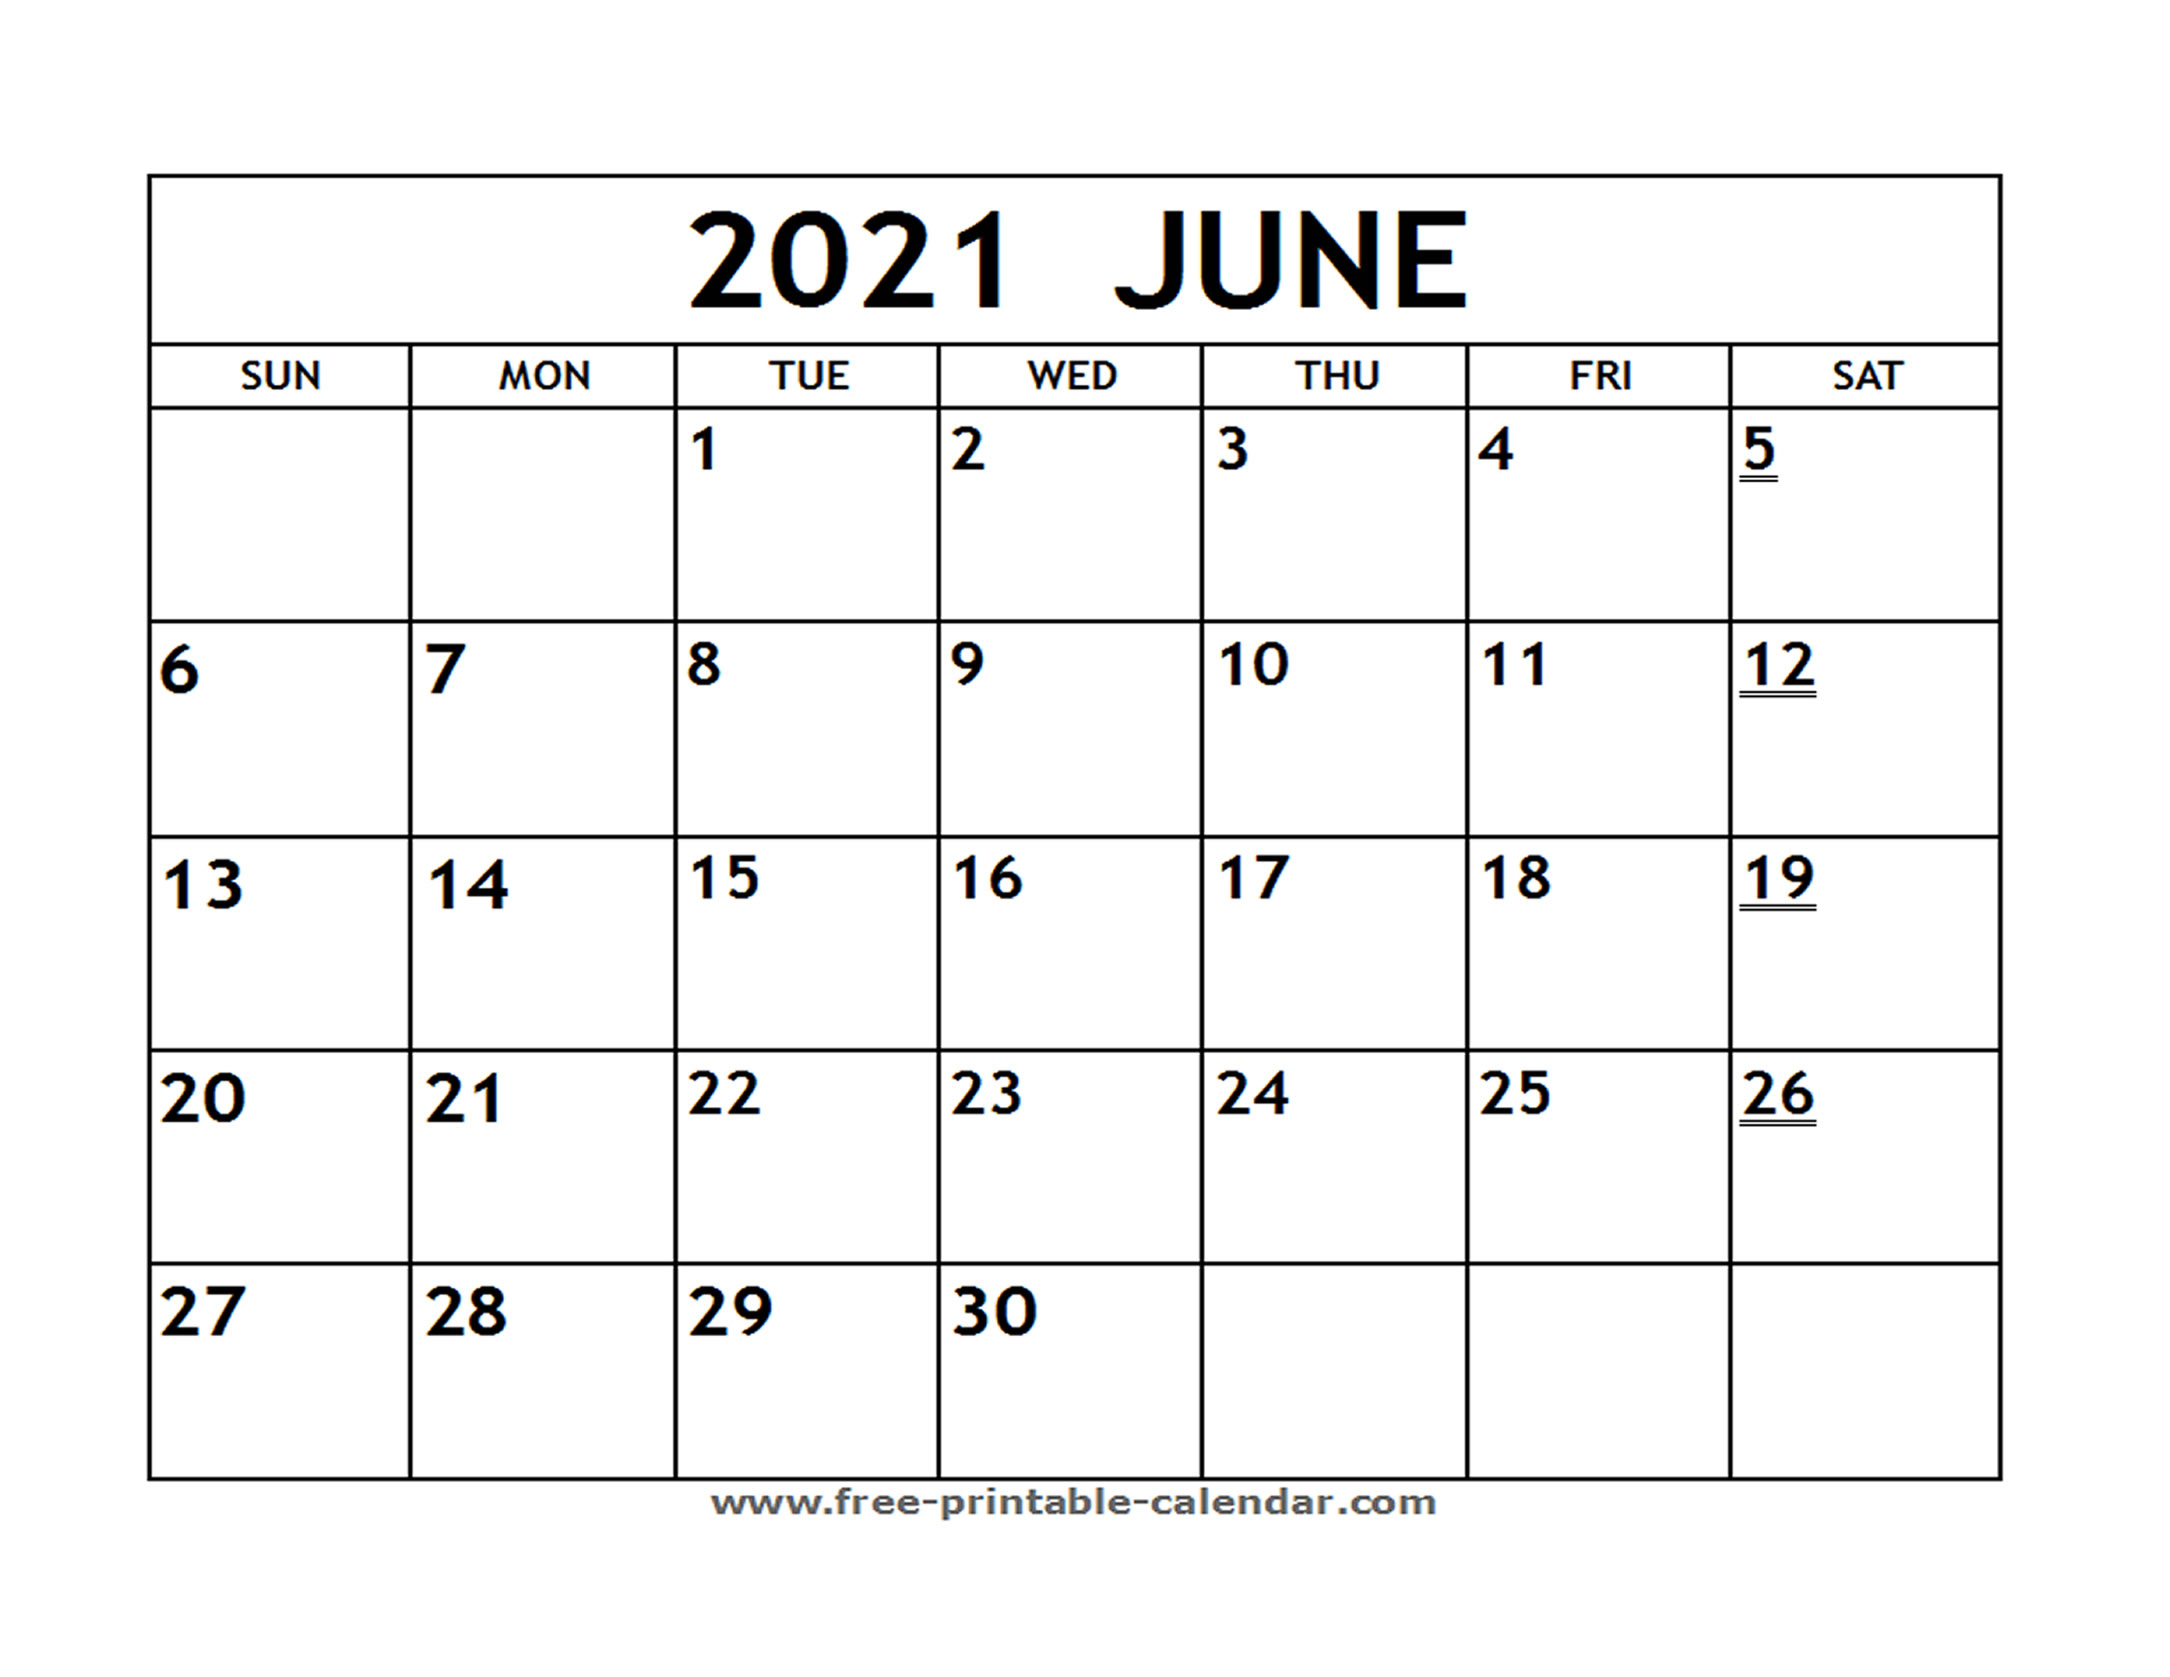 Editable Free Printable 2021 Calendar With Holidays